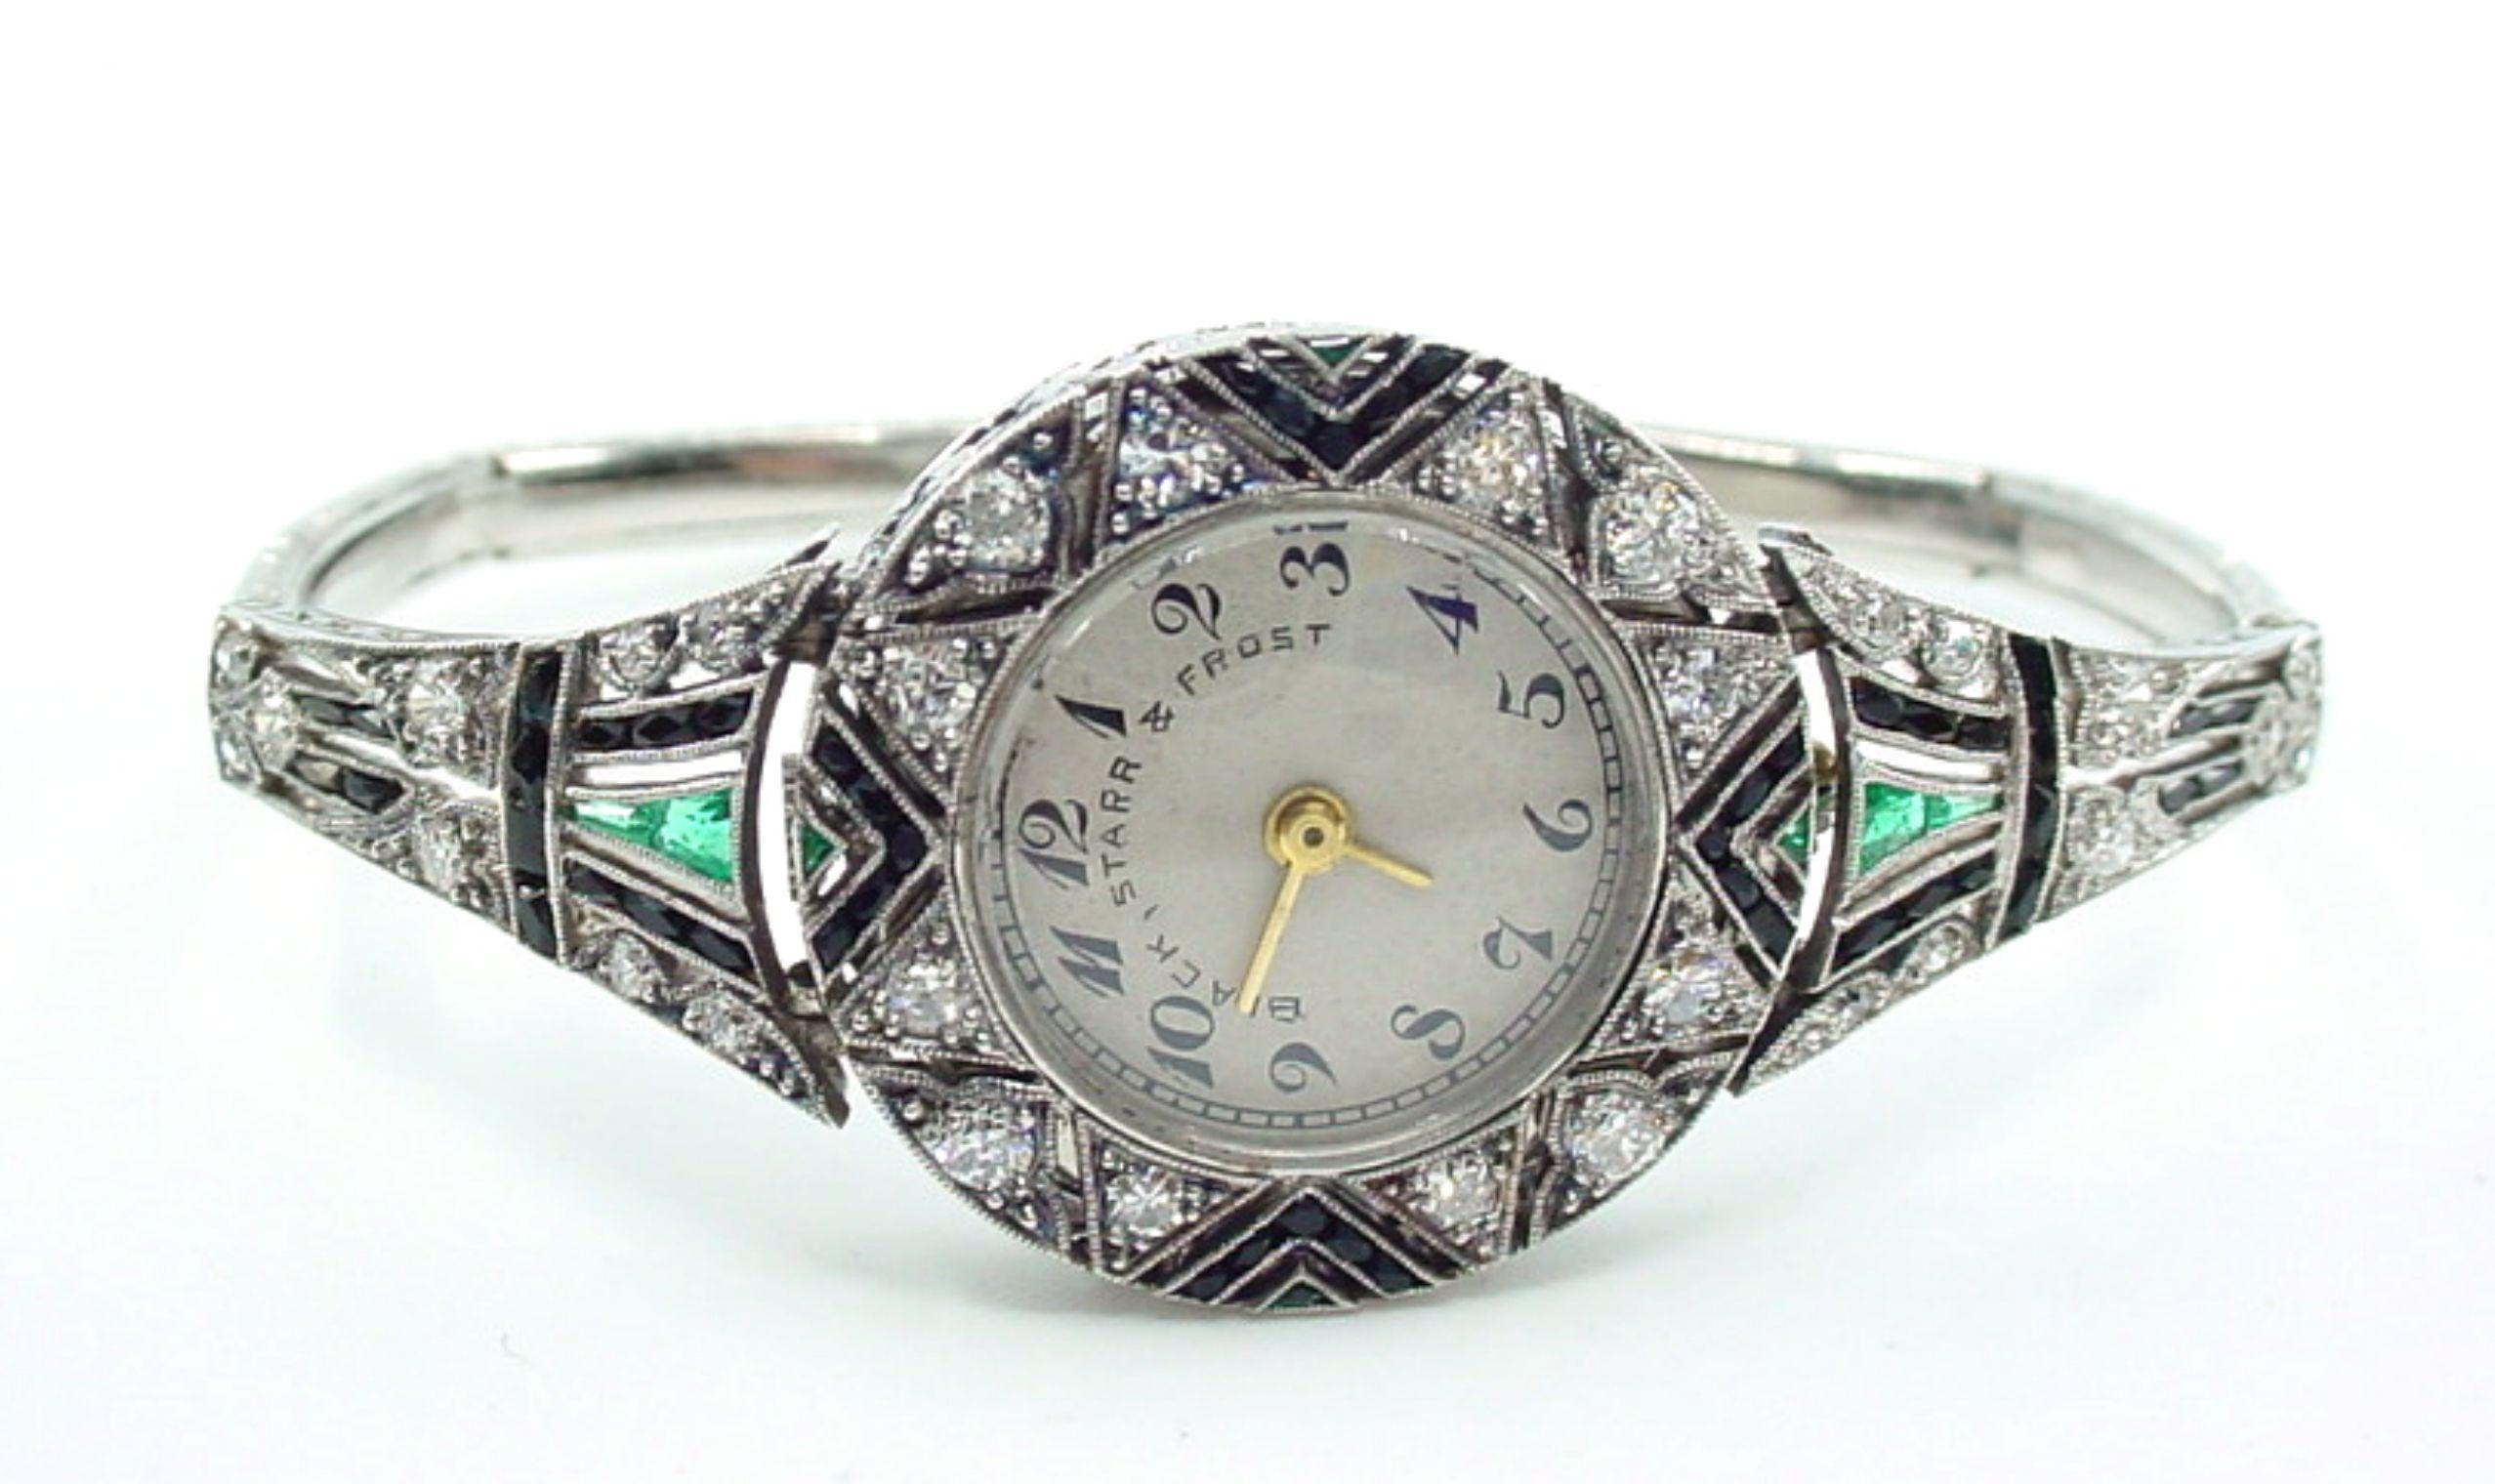 Superbe~

En splendide état, cette montre-bracelet présente des onyx taillés en calibre, des émeraudes de mine de terre et des diamants étincelants logés dans une monture en platine gravée.

Veuillez consulter les détails de cet exemple